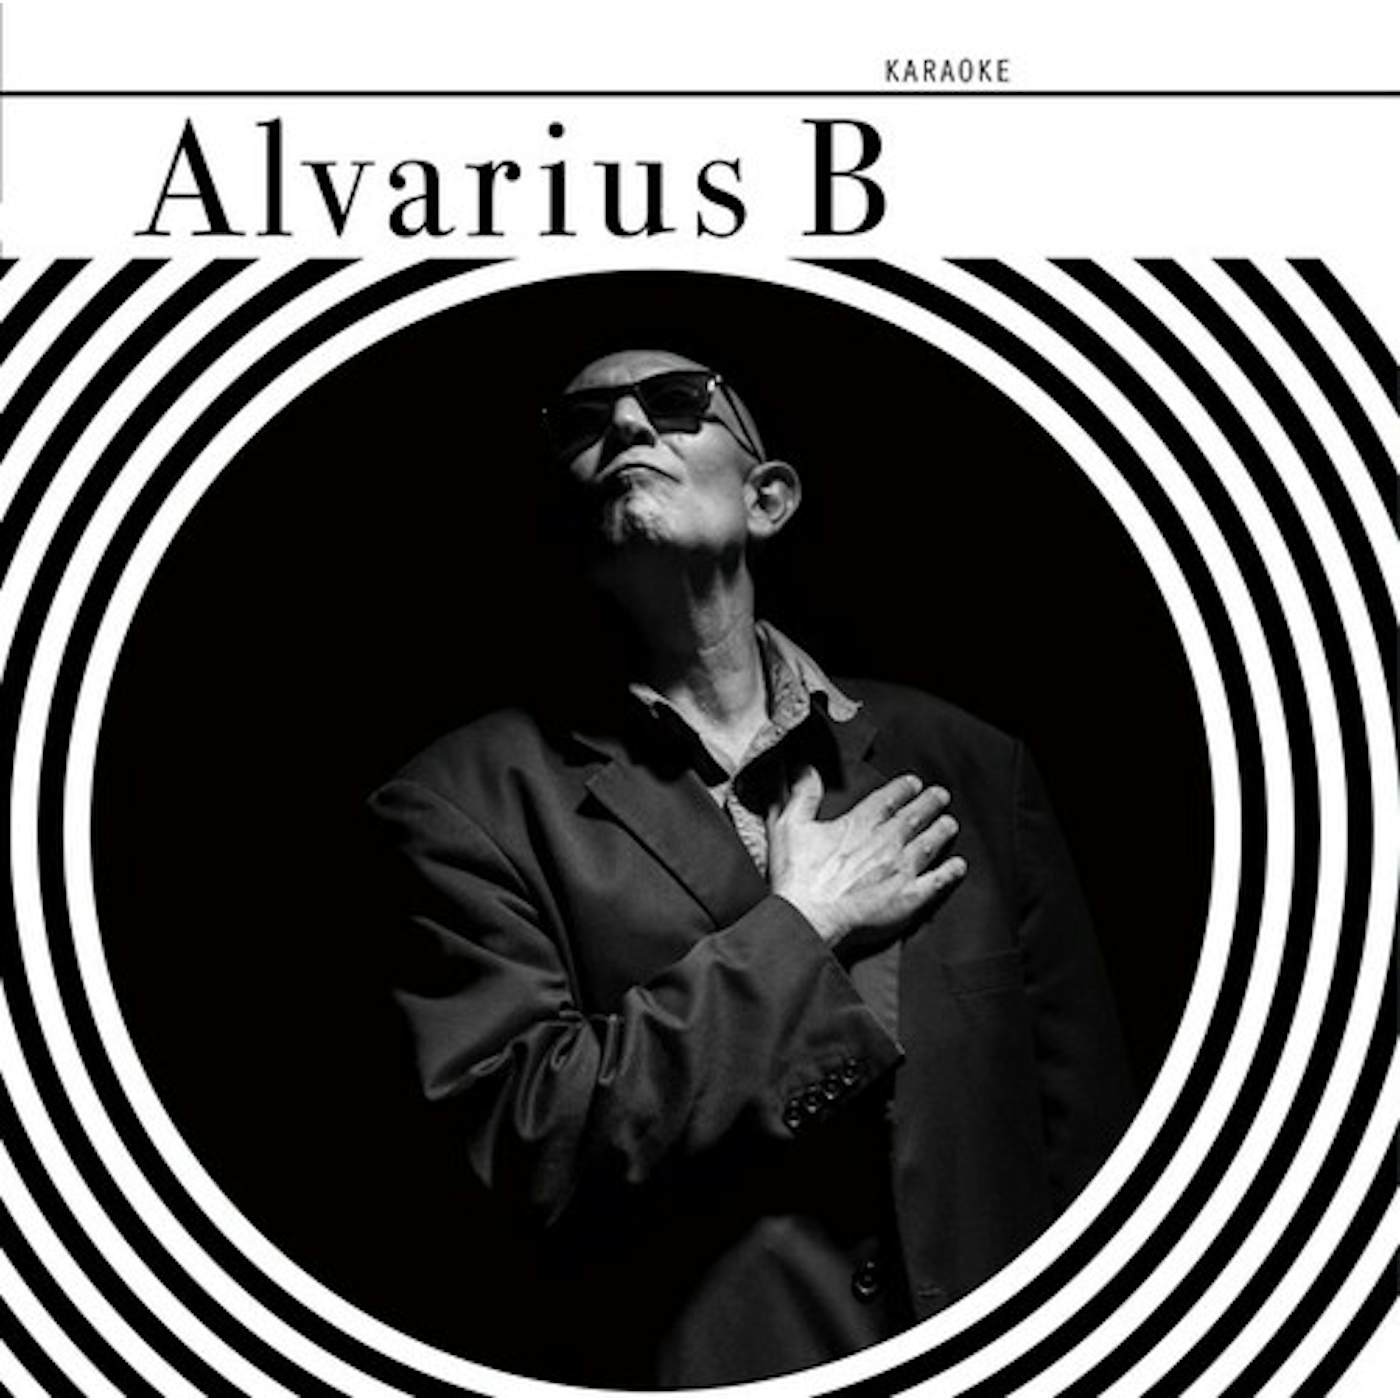 Alvarius B. Karaoke Vinyl Record